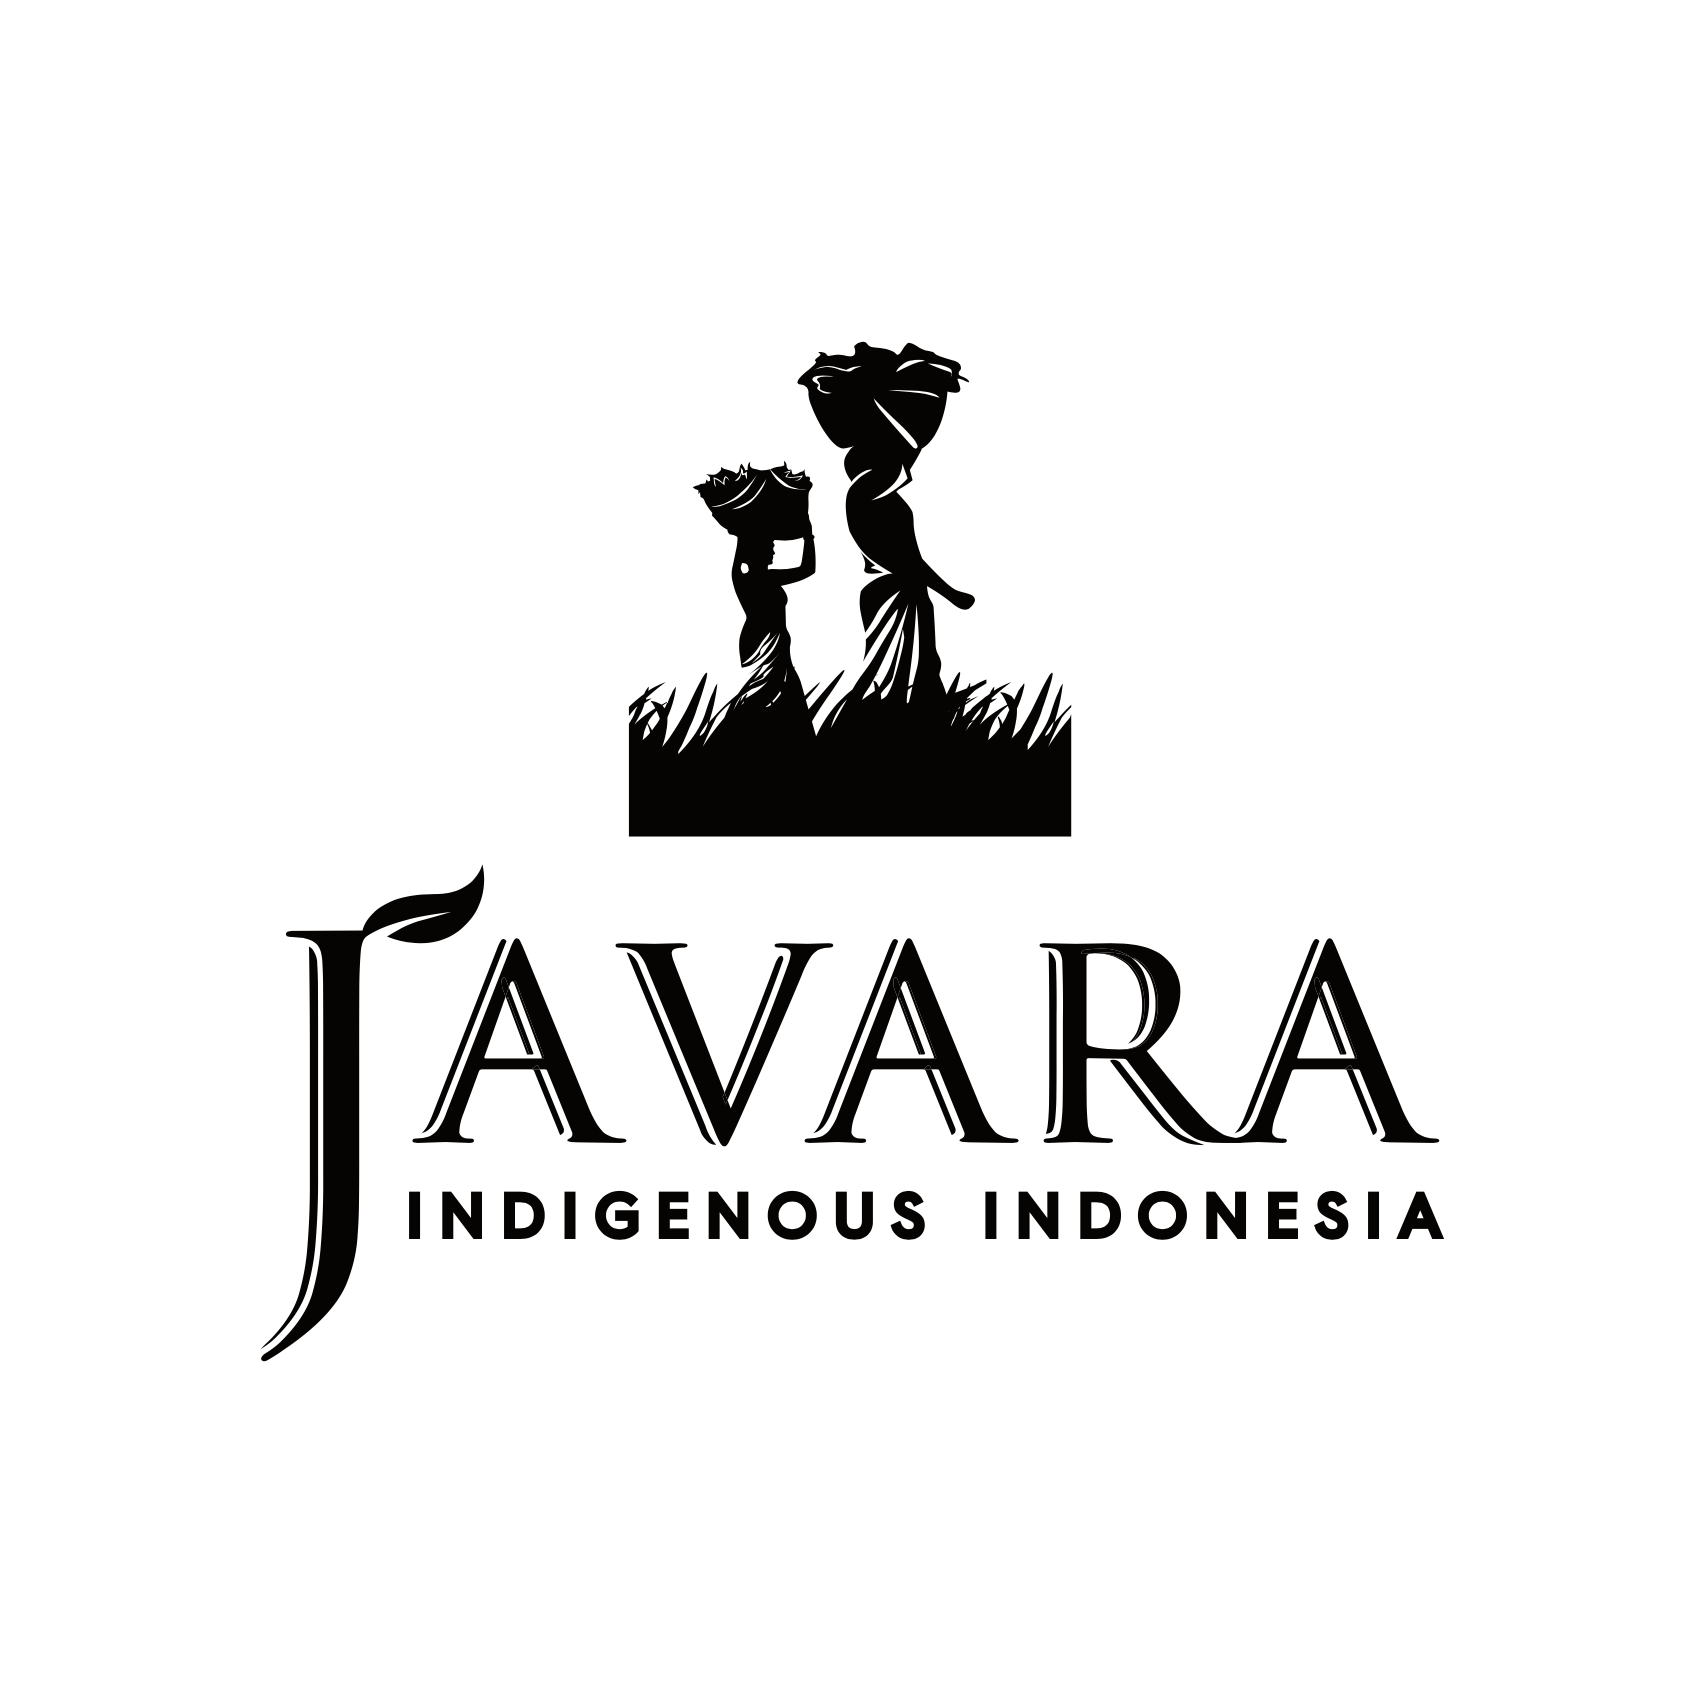 شعار جافارا، وهي شركة إندونيسية أصلية، مع اسم العلامة التجارية بخط أبيض على خلفية سوداء.